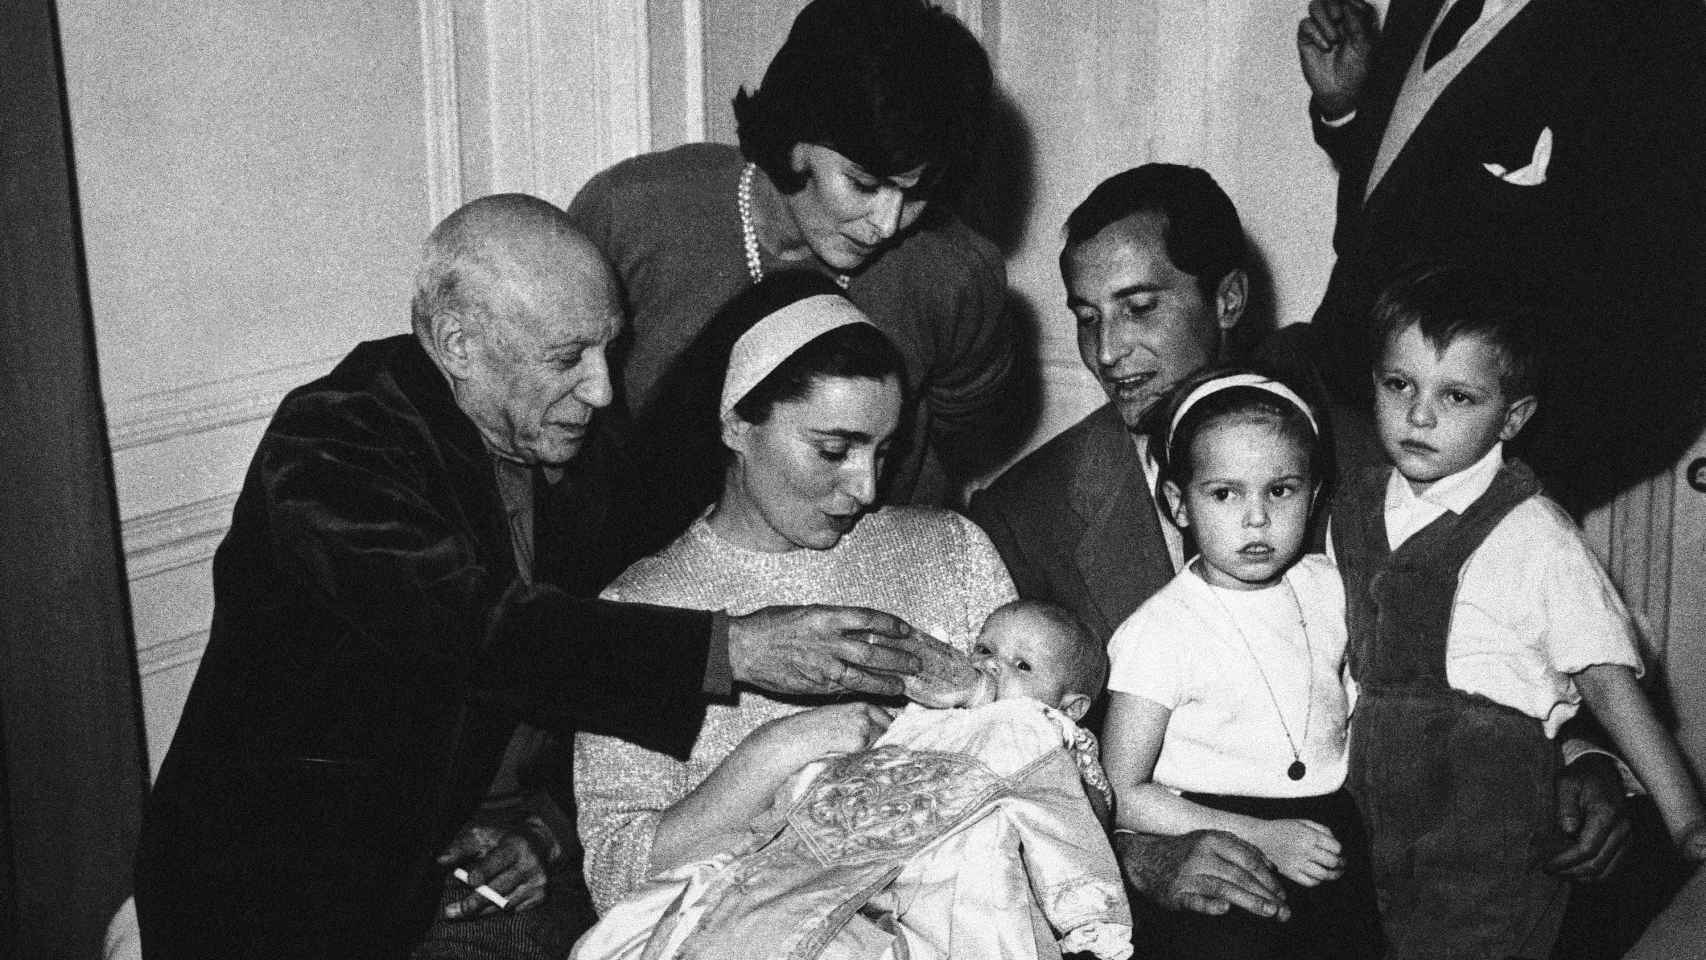 Pablo Picasso, a la izquierda, dándole el biberón a su ahijada, Paola Dominguín, en su bautizo en Cannes junto al resto de la familia.